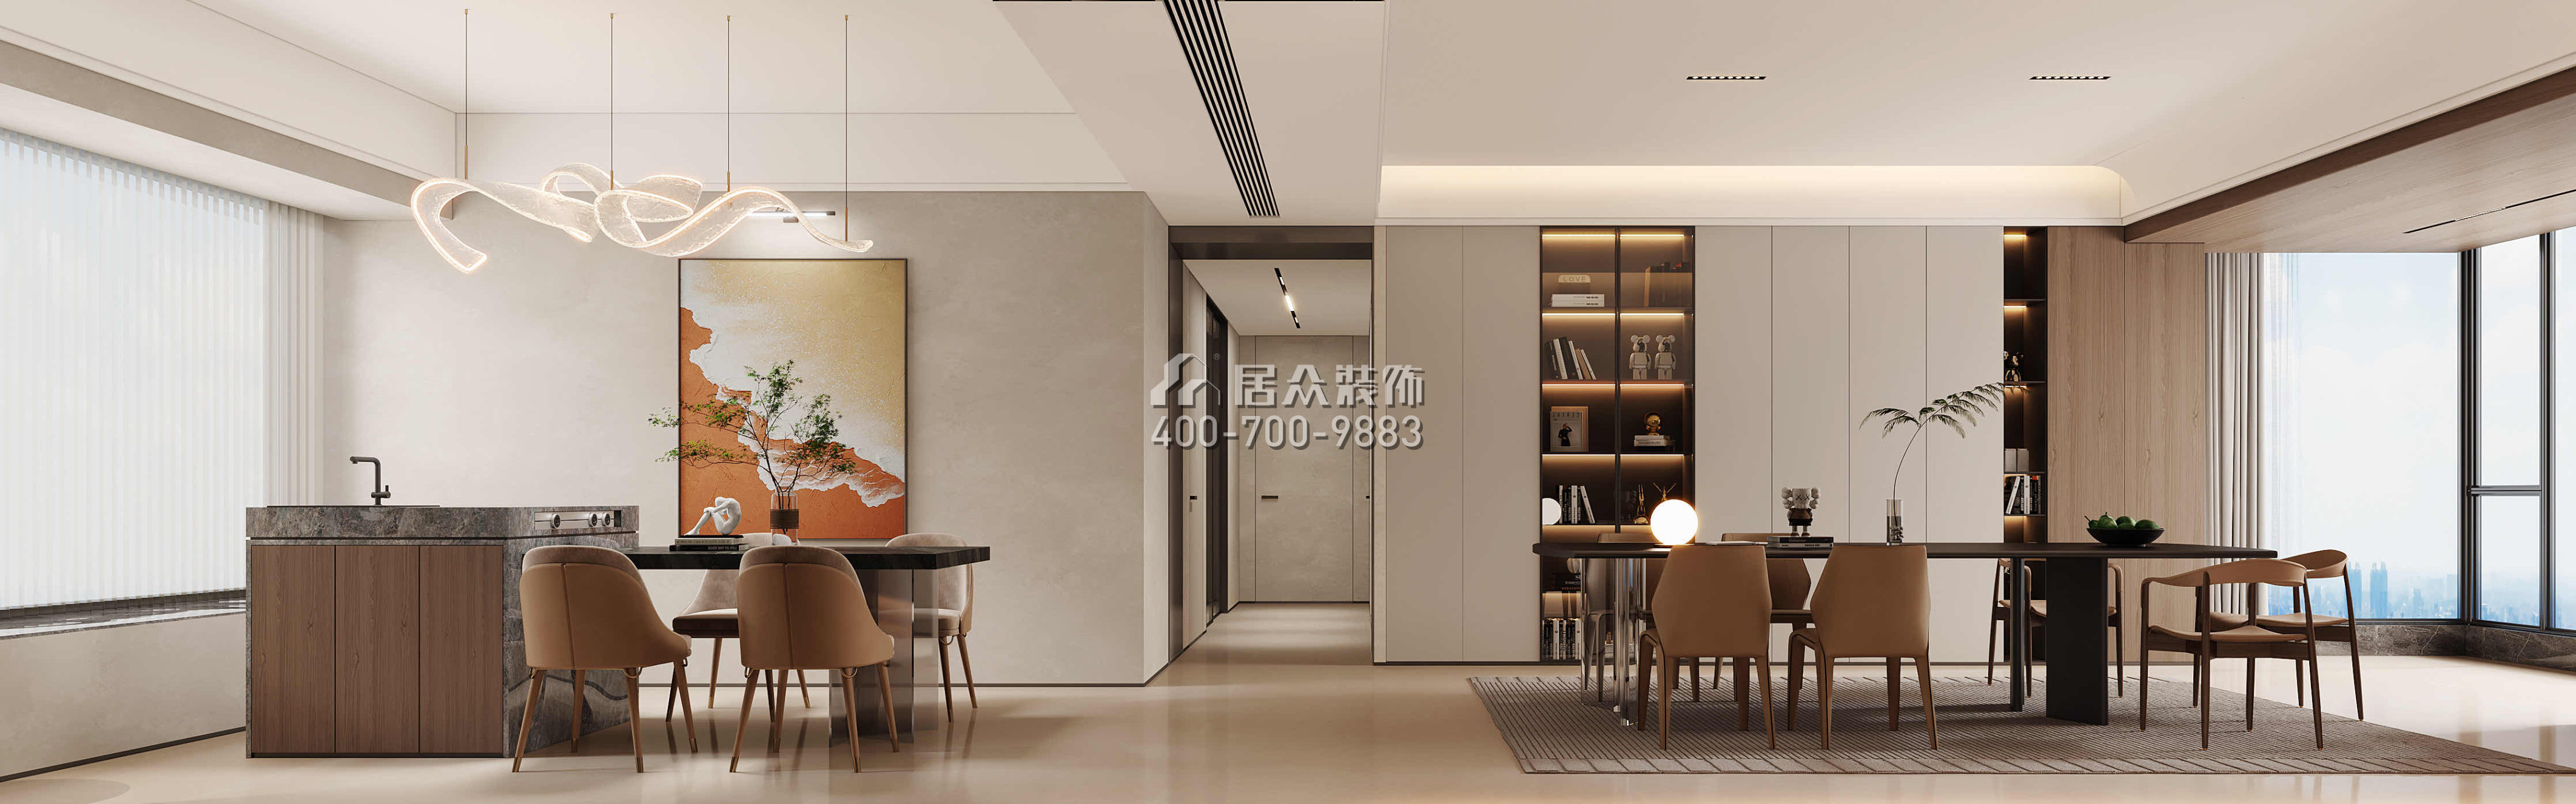 天健天骄南苑210平方米现代简约风格平层户型客餐厅一体装修效果图